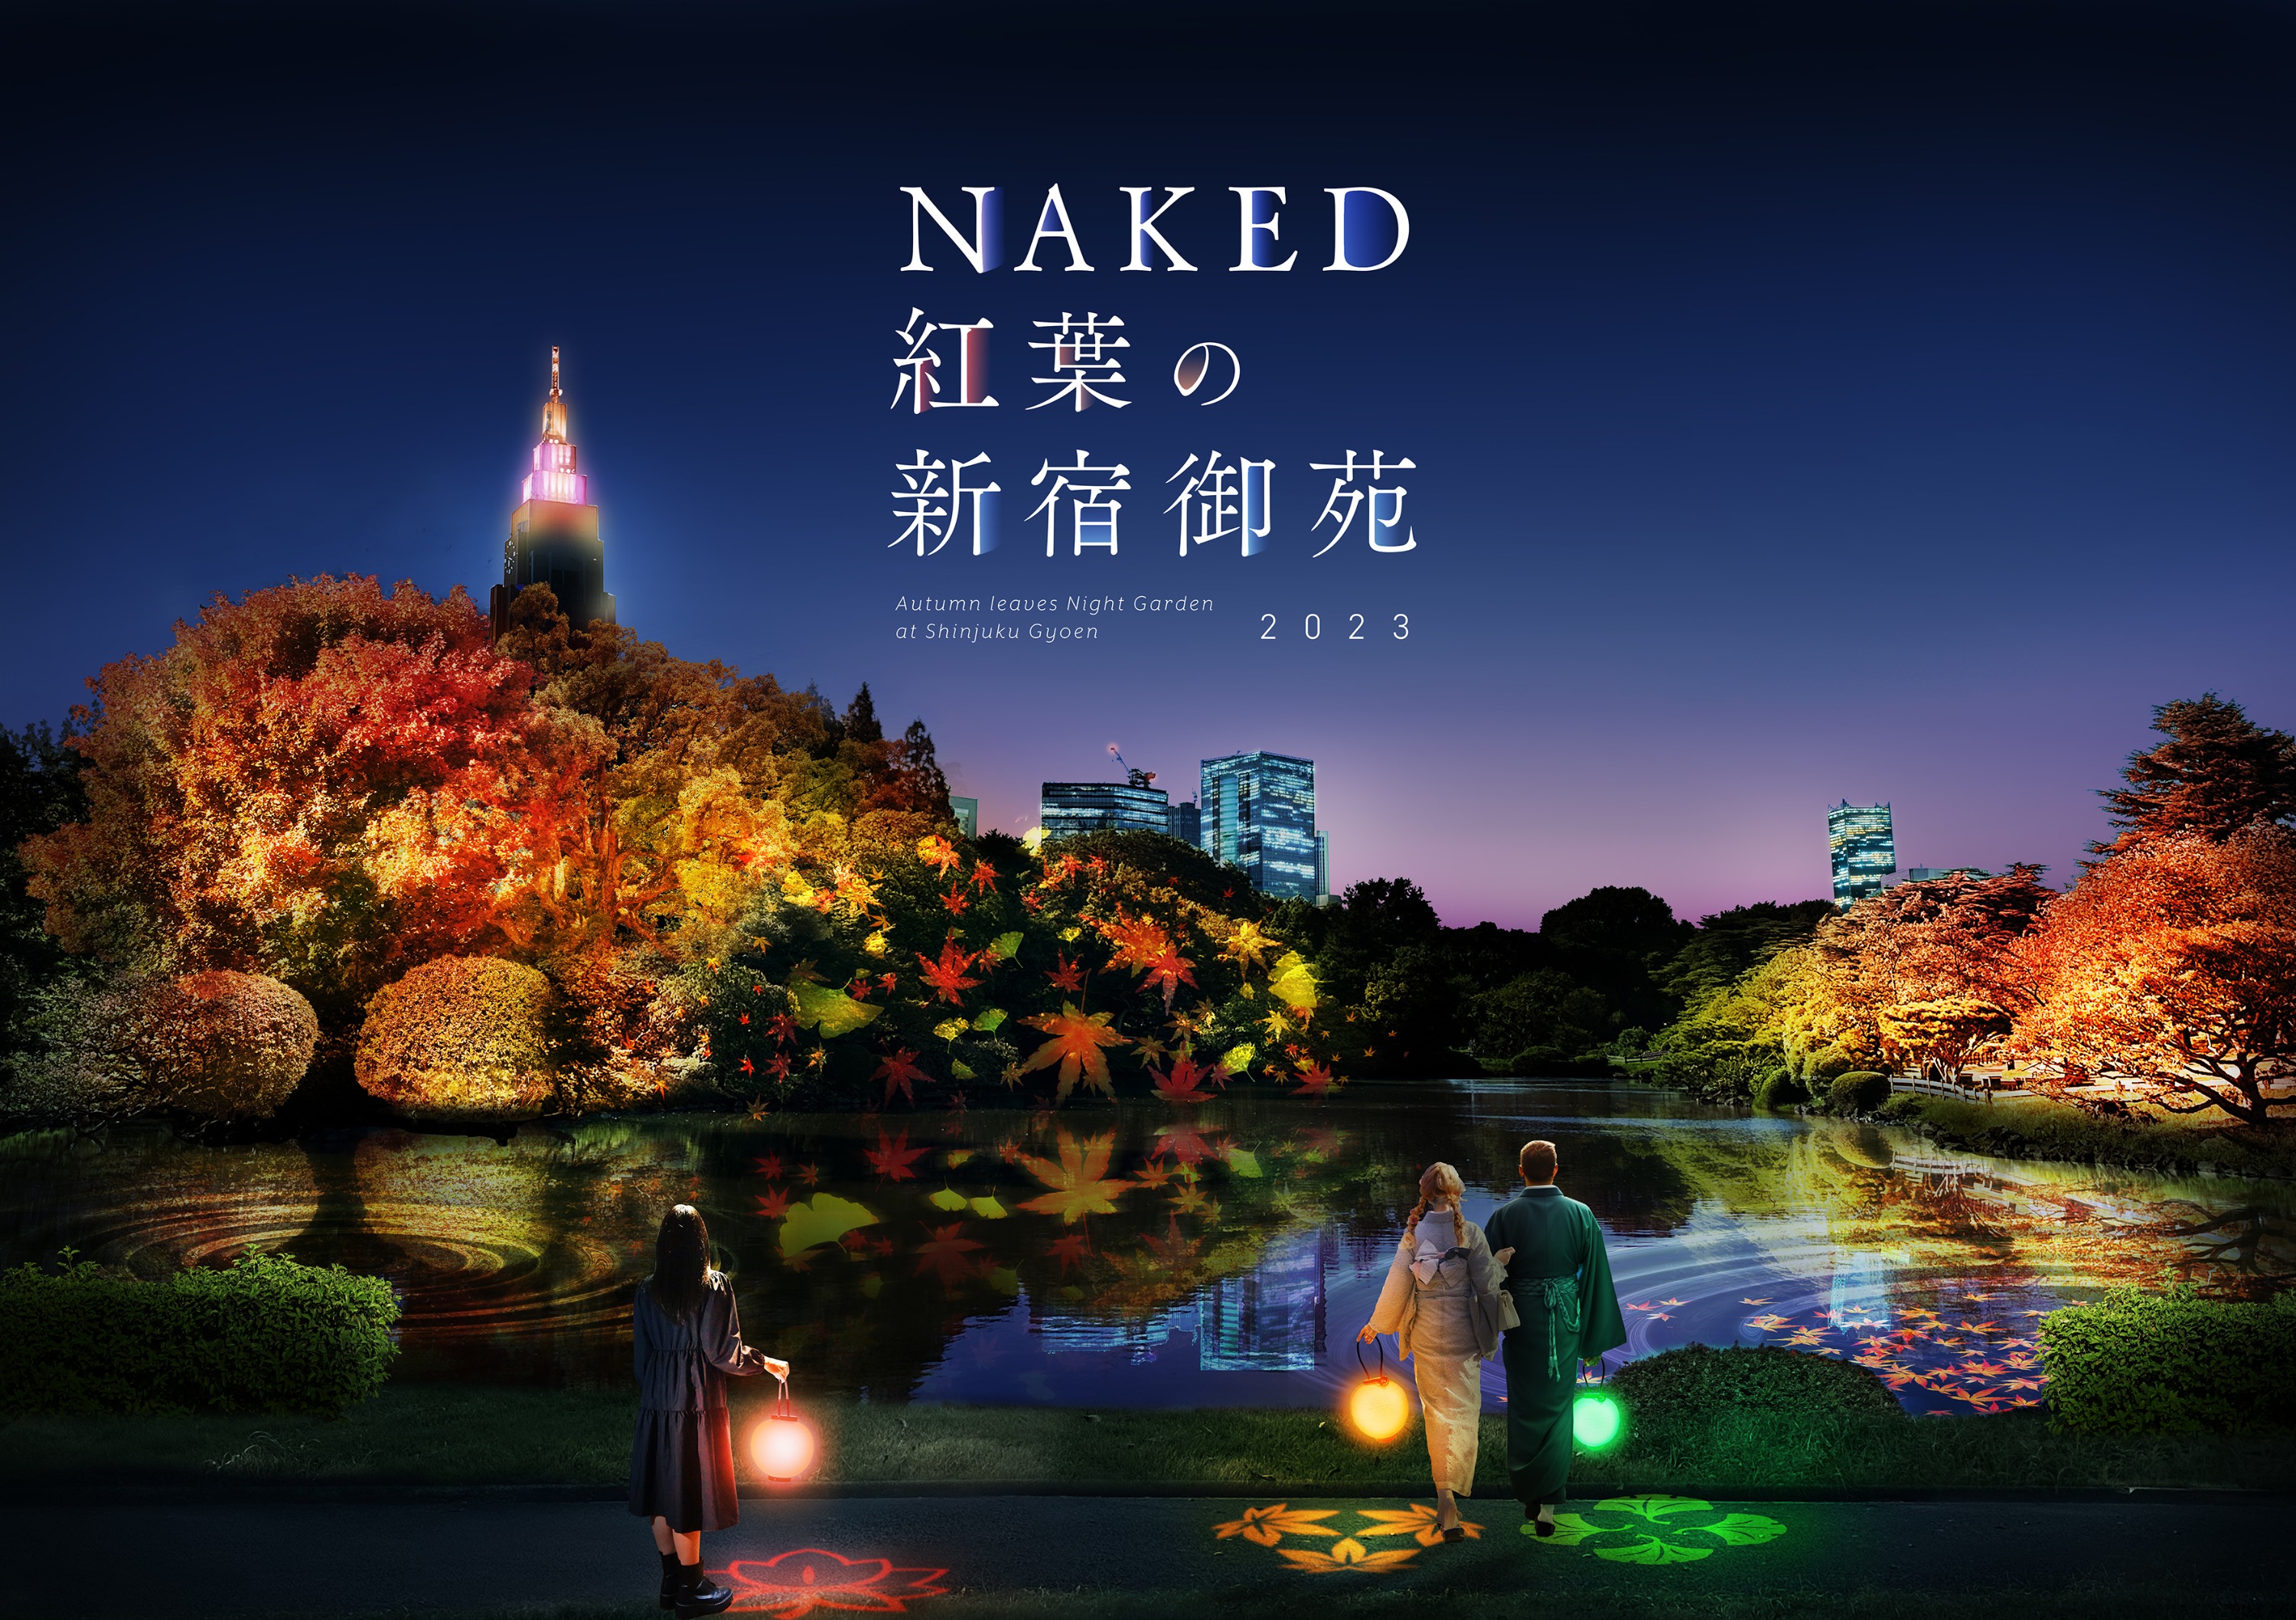 NAKED Night Garden at Shinjuku Gyoen Admission in Tokyo